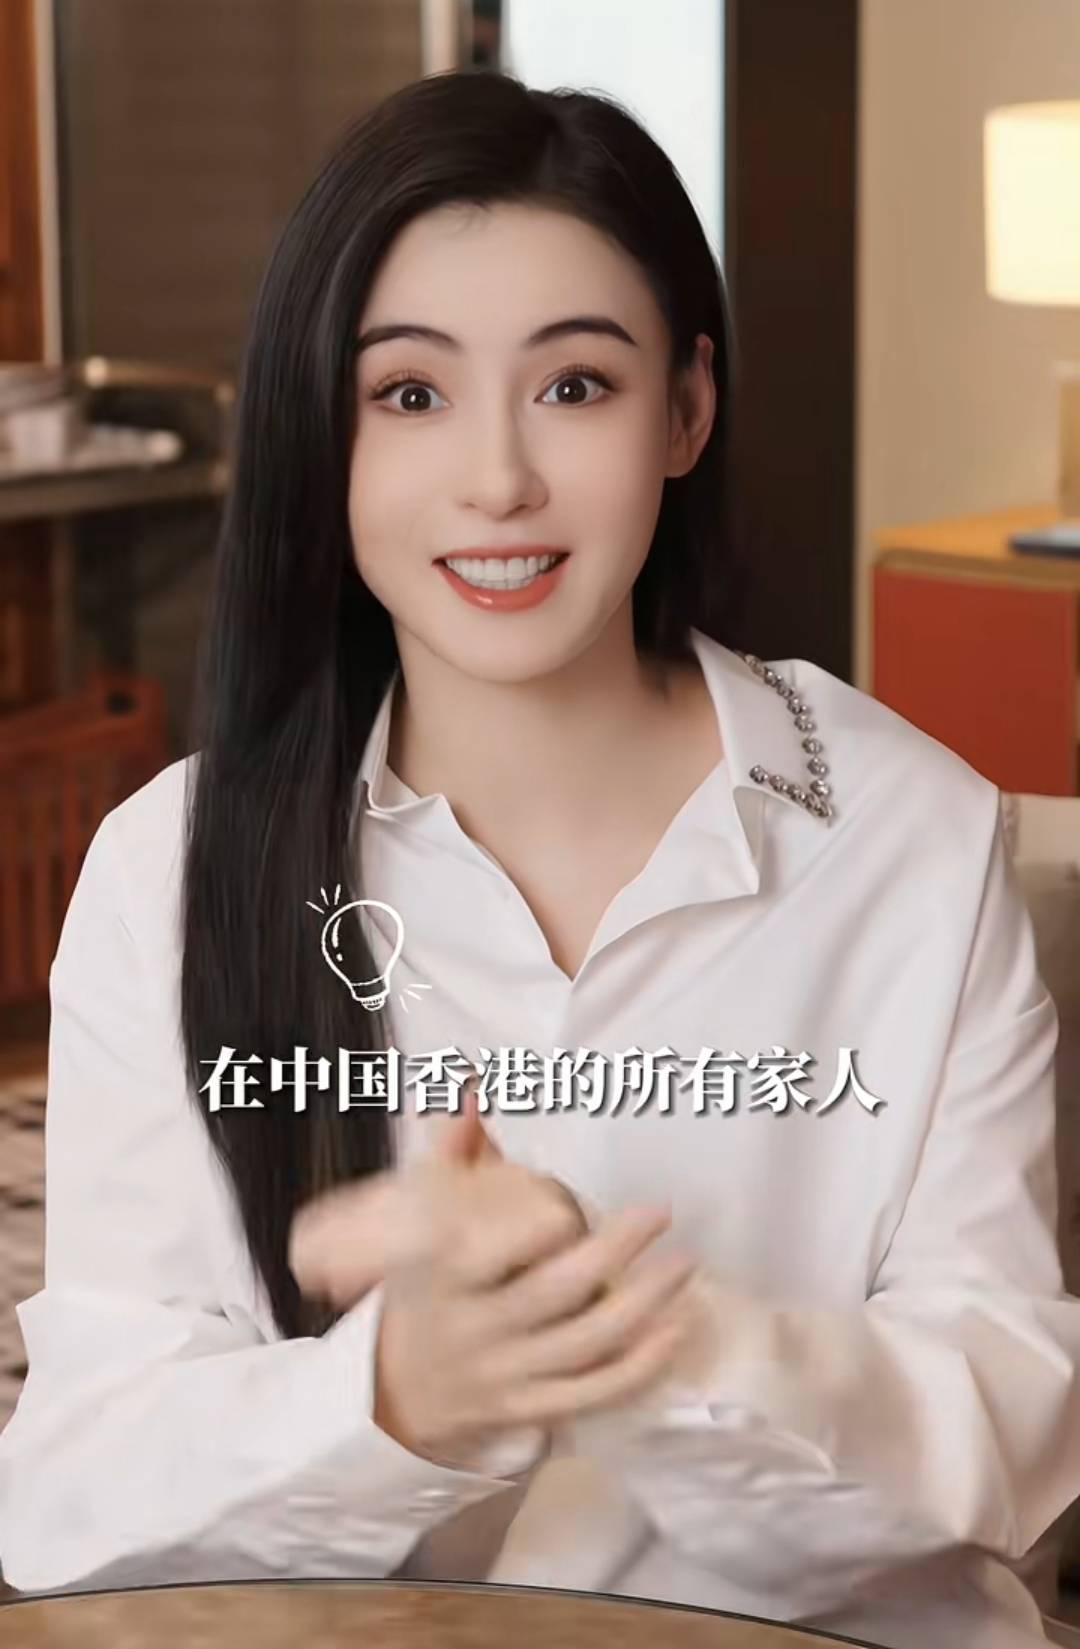 张栢芝 最后只係回答「在中国香港的所有家人」，令网民猜测她的家中将会增添新成员。